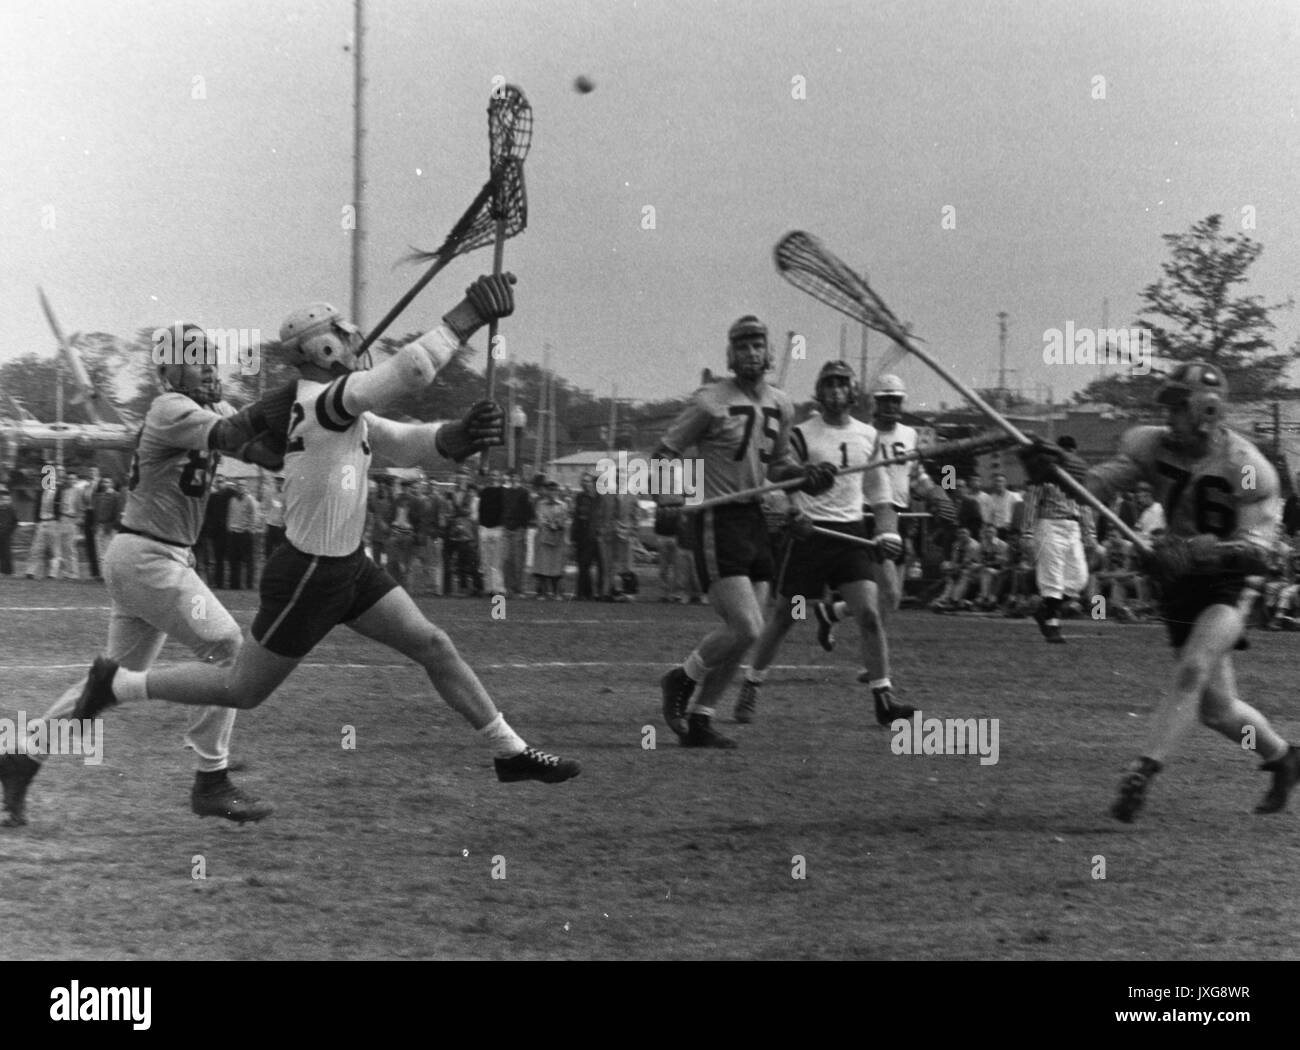 La crosse photo d'action prises pendant un match non identifiée, différents acteurs tentent d'attraper la balle, qui est dans l'air, 1950. Banque D'Images